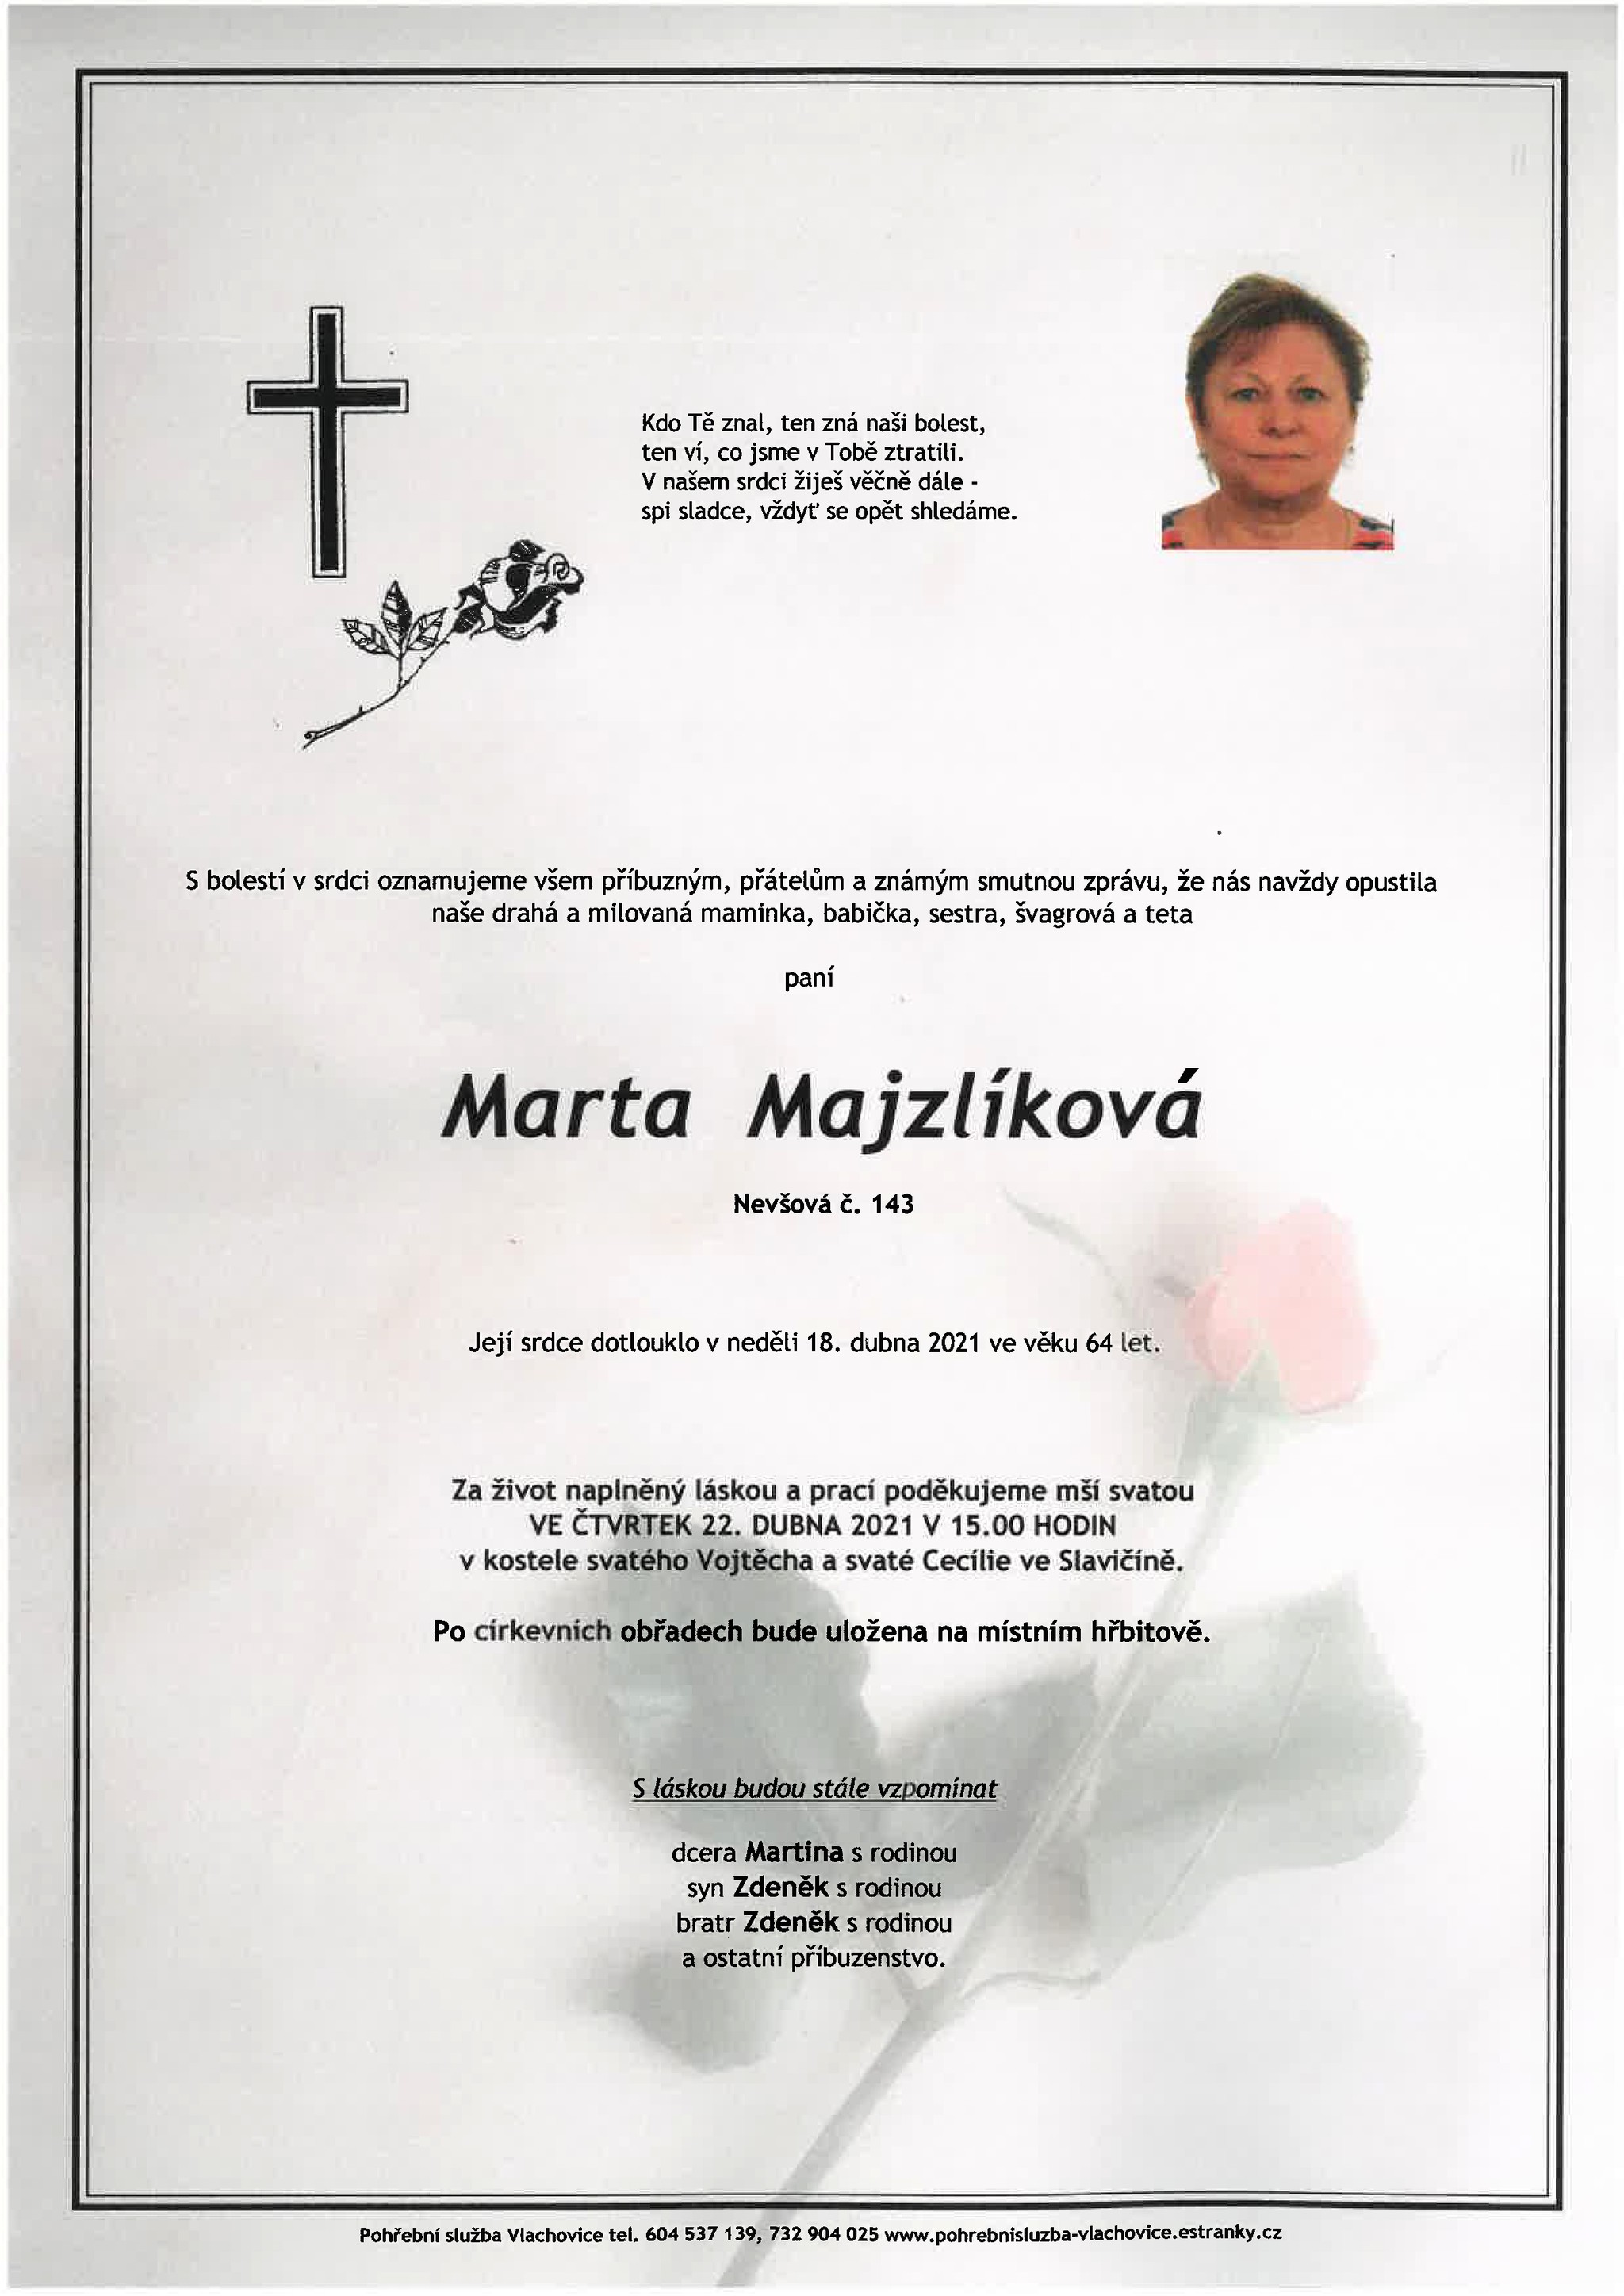 Marta Majzlíková